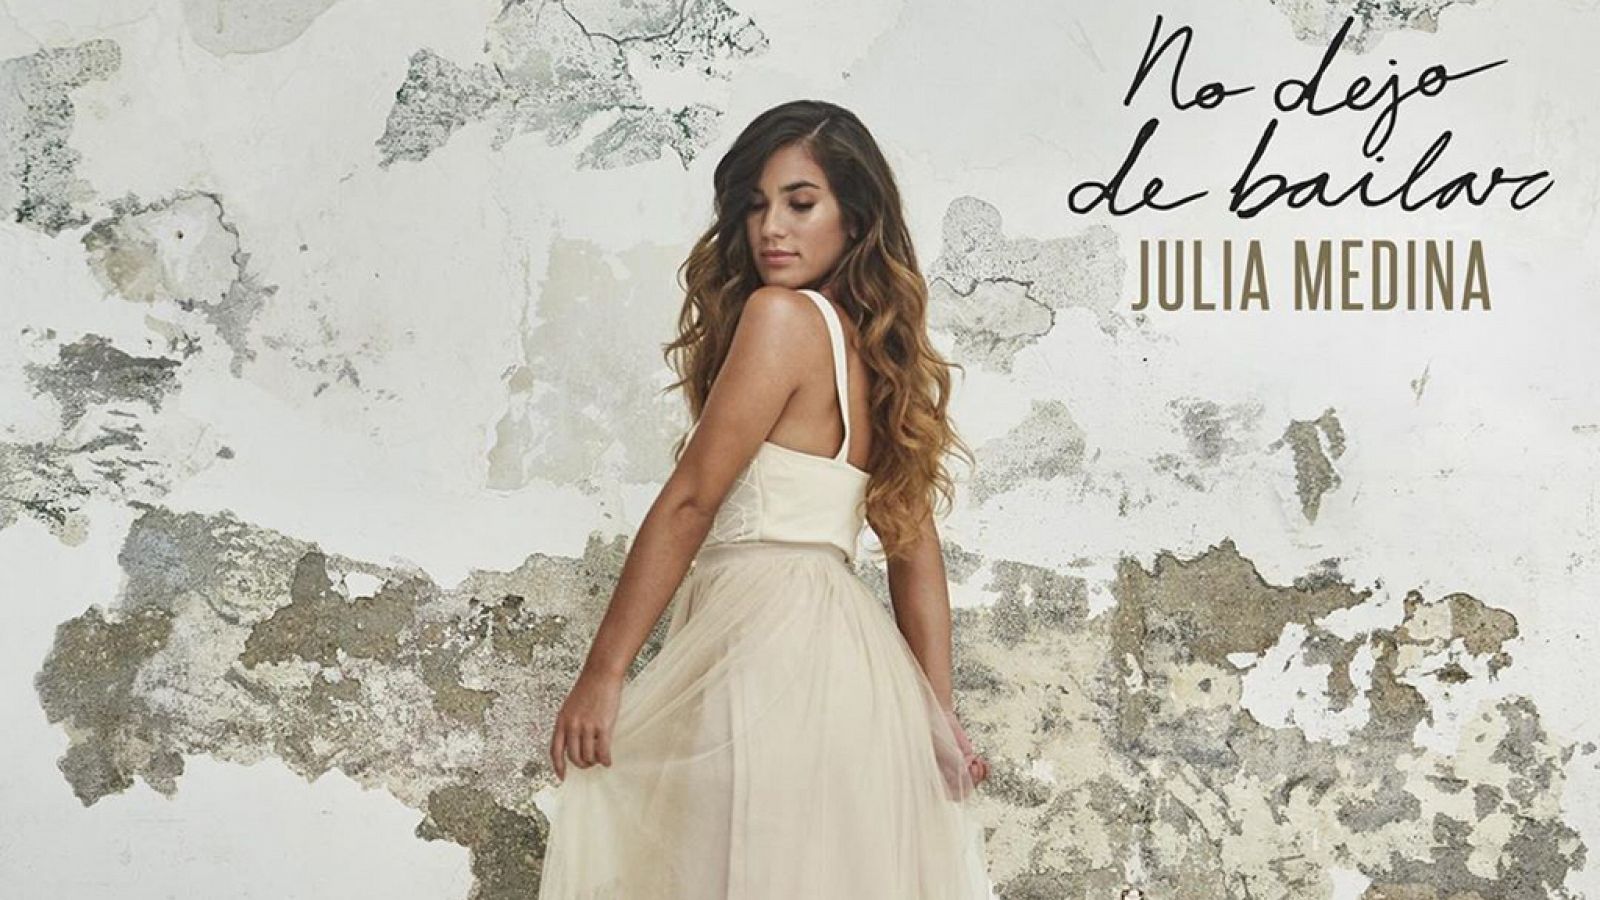 Julia Medina publica "No dejo de bailar", su primer disco de estudio